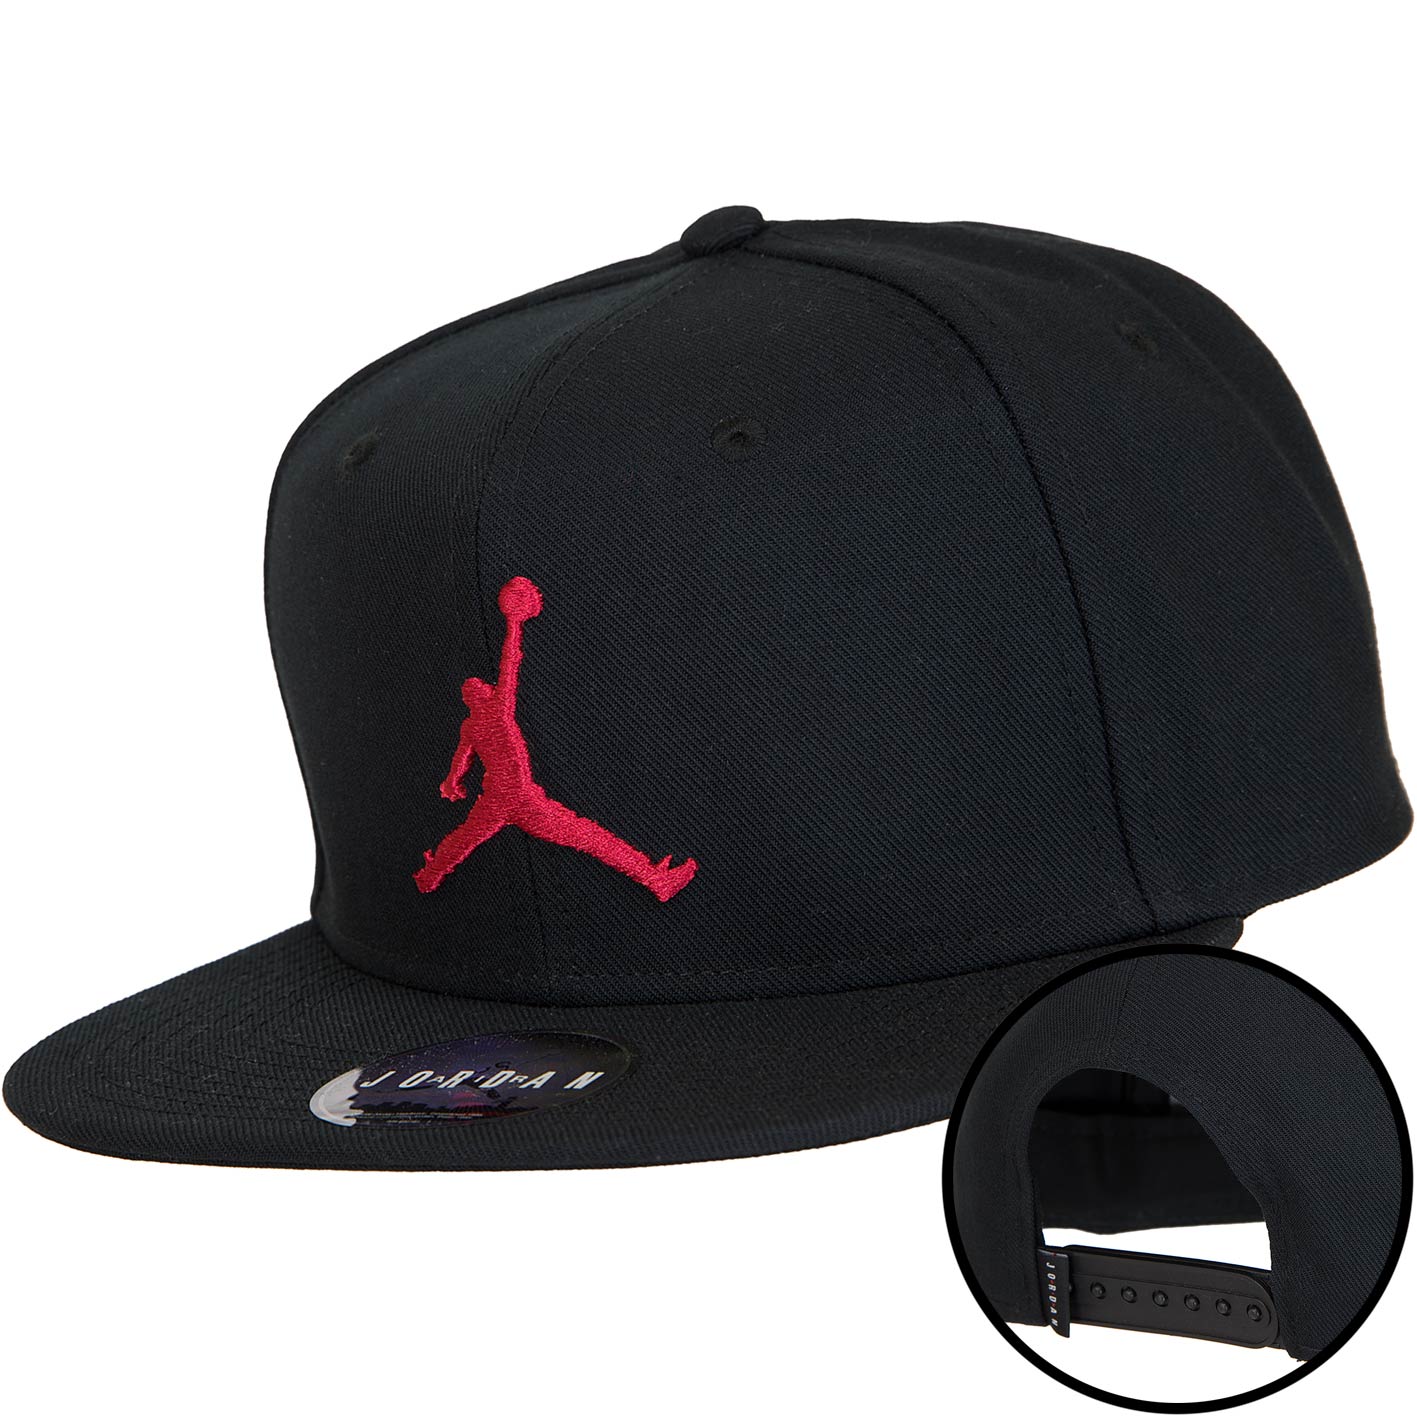 ☆ Nike Snapback Cap Jordan Jumpman Pro schwarz/rot - hier bestellen!